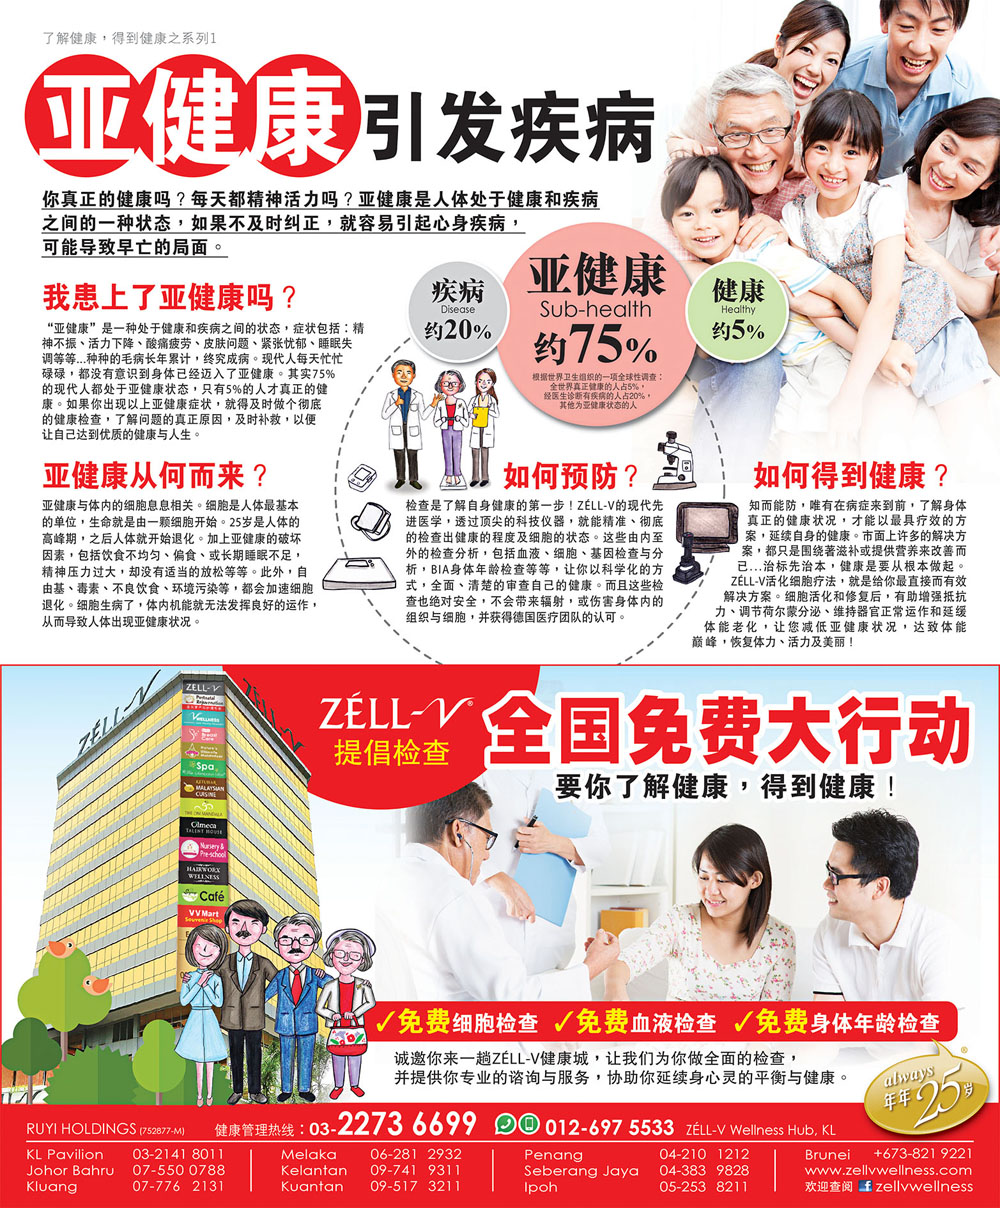 ZÉLL-V Wellness Hub @ Star副刊 (April’ 17)